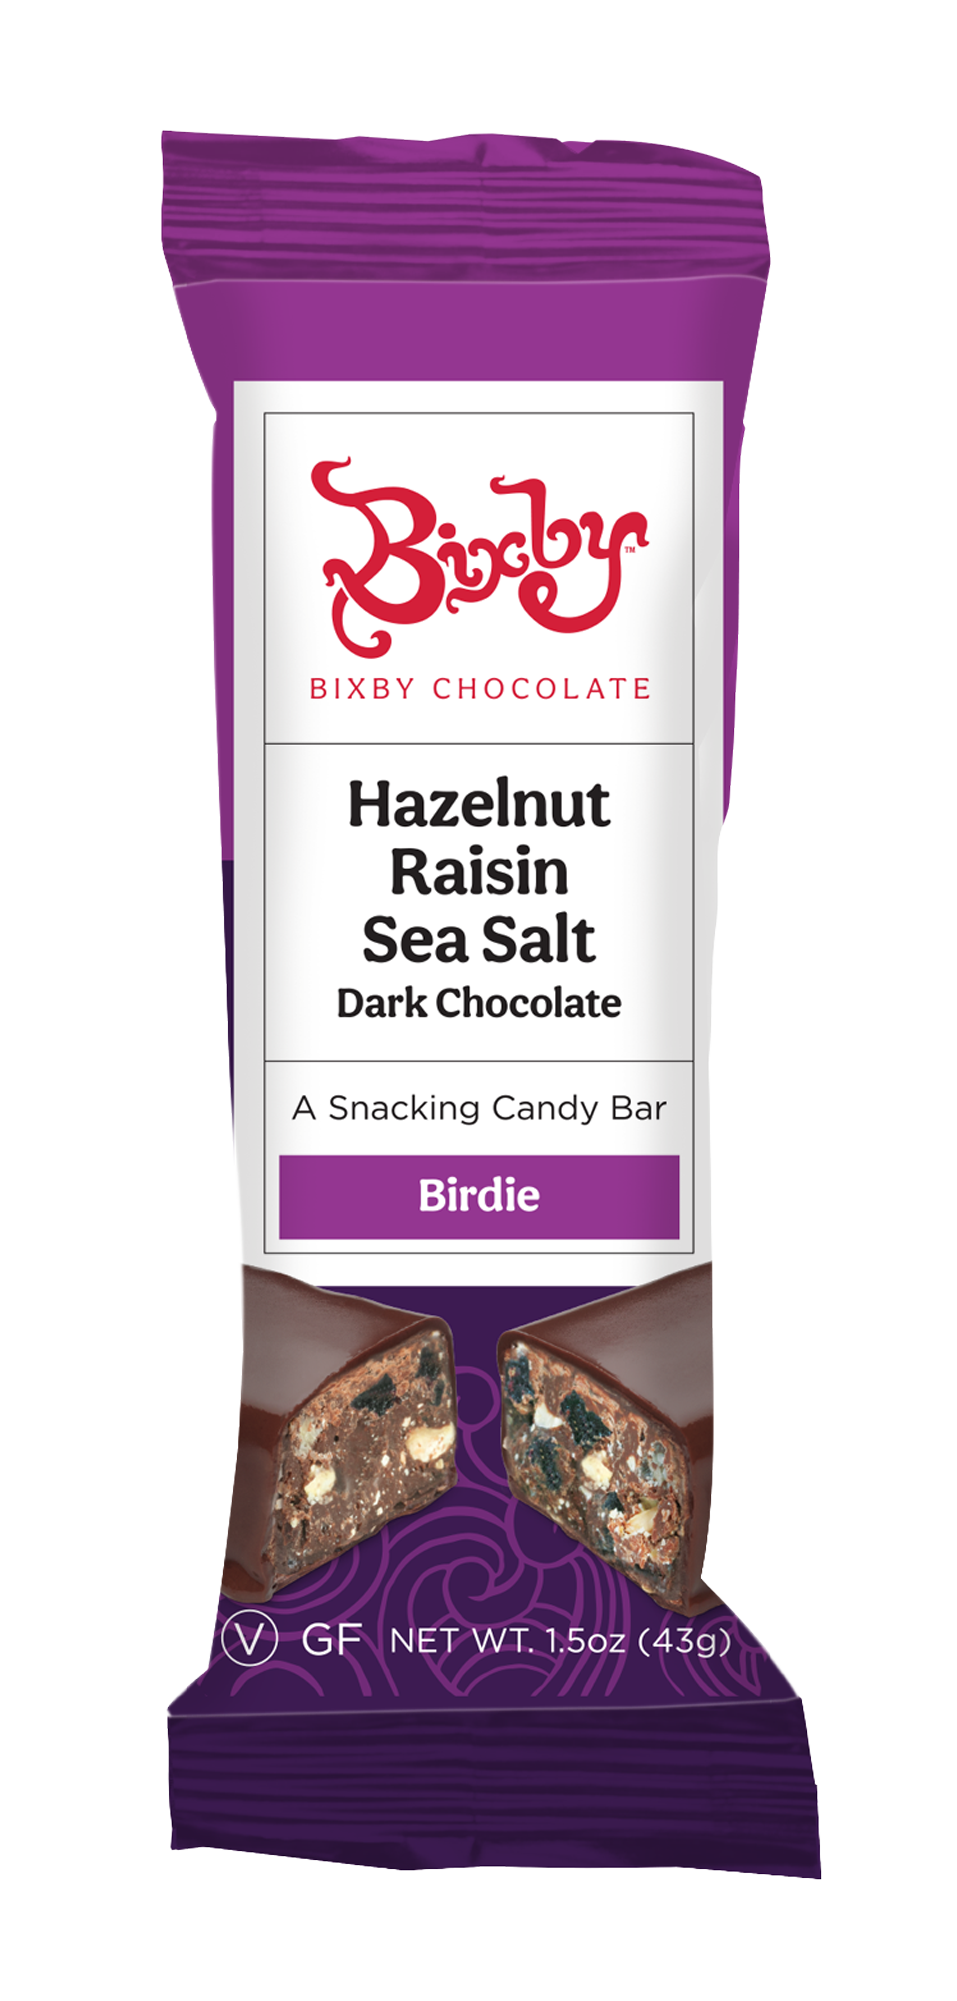 Birdie - Dark Chocolate + Hazelnuts + Raisins + Maine Sea Salt